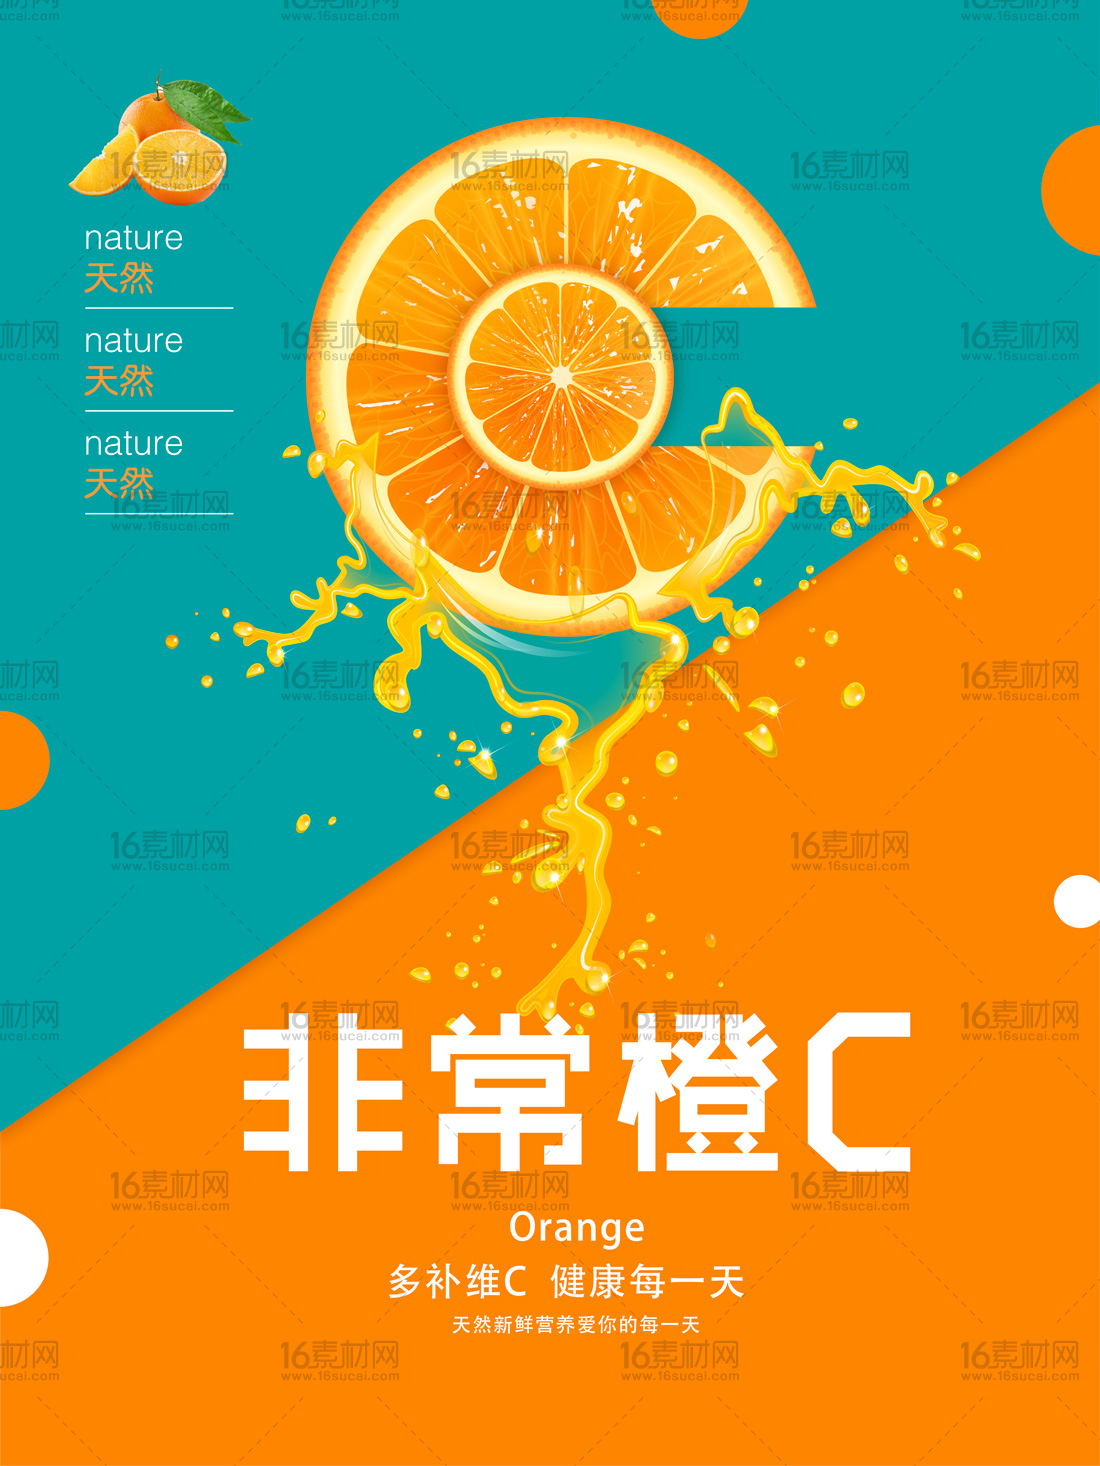 非常橙C水果店宣传海报psd分层素材